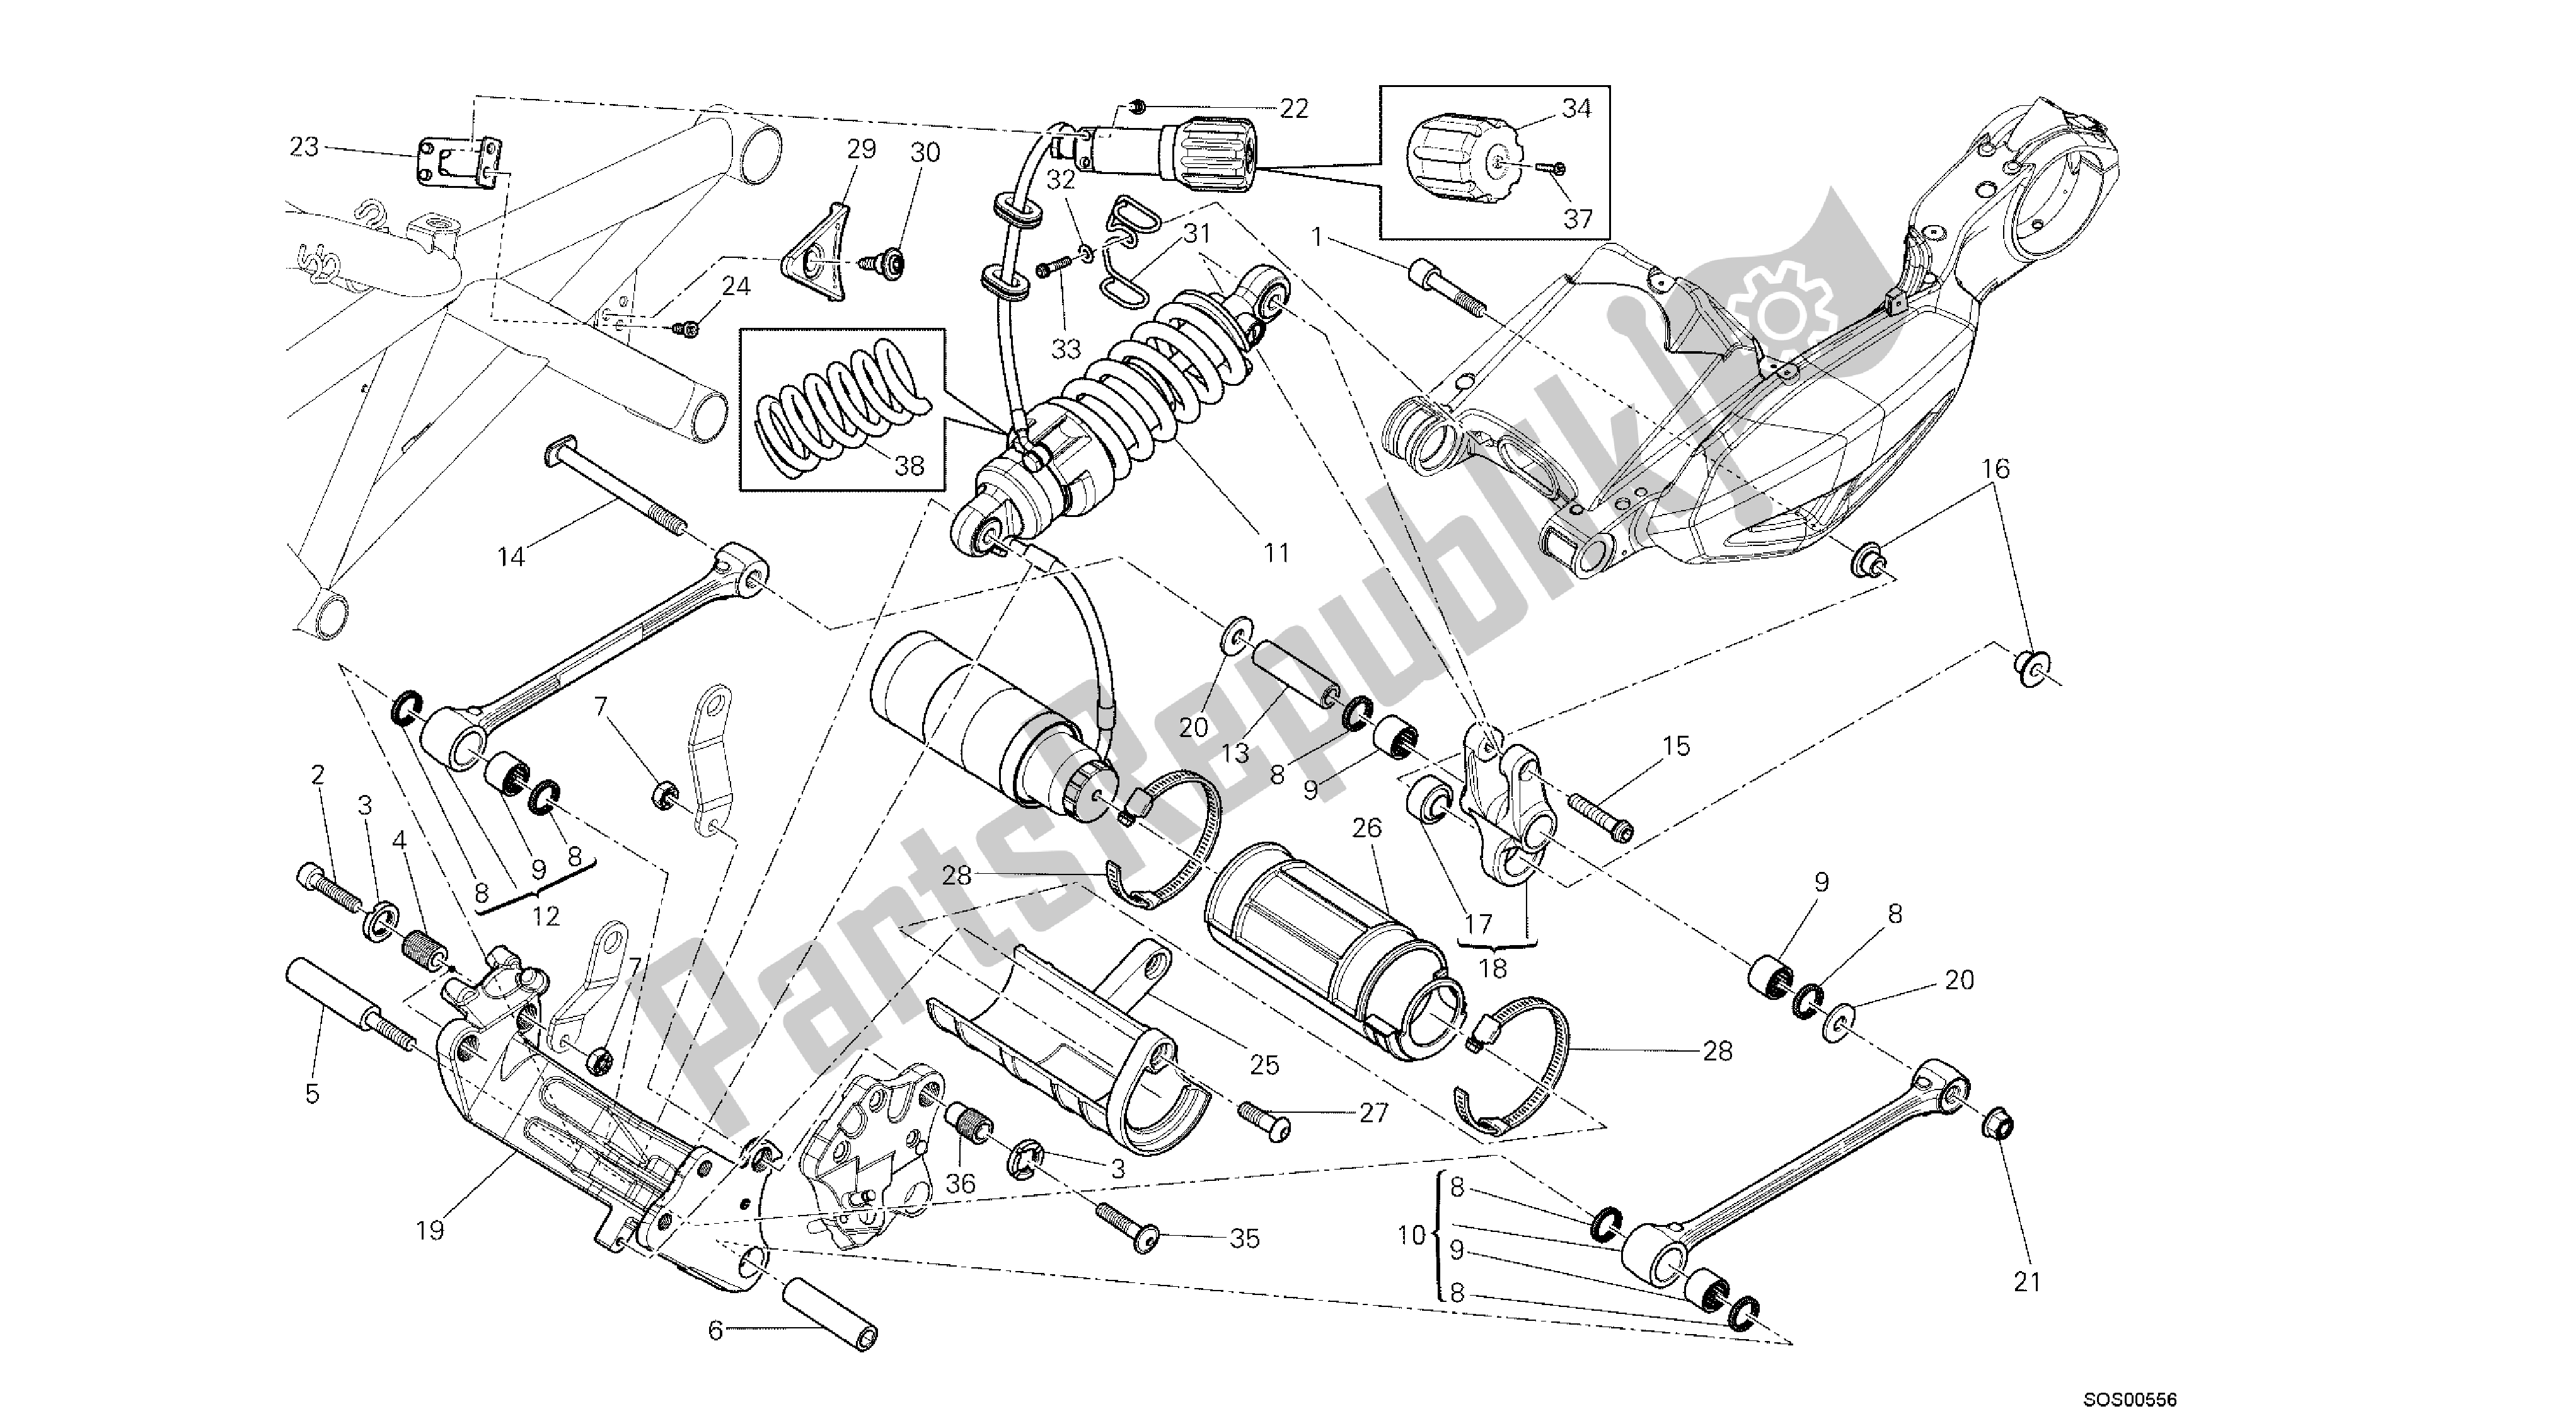 Todas las partes para Dibujo 028 - Amortiguador Trasero [mod: Dvl; Xs T: A Us, Bra, Ch N, E Ur, F Ra, Jap, Th Ai] Group Fr Ame de Ducati Diavel 1200 2013